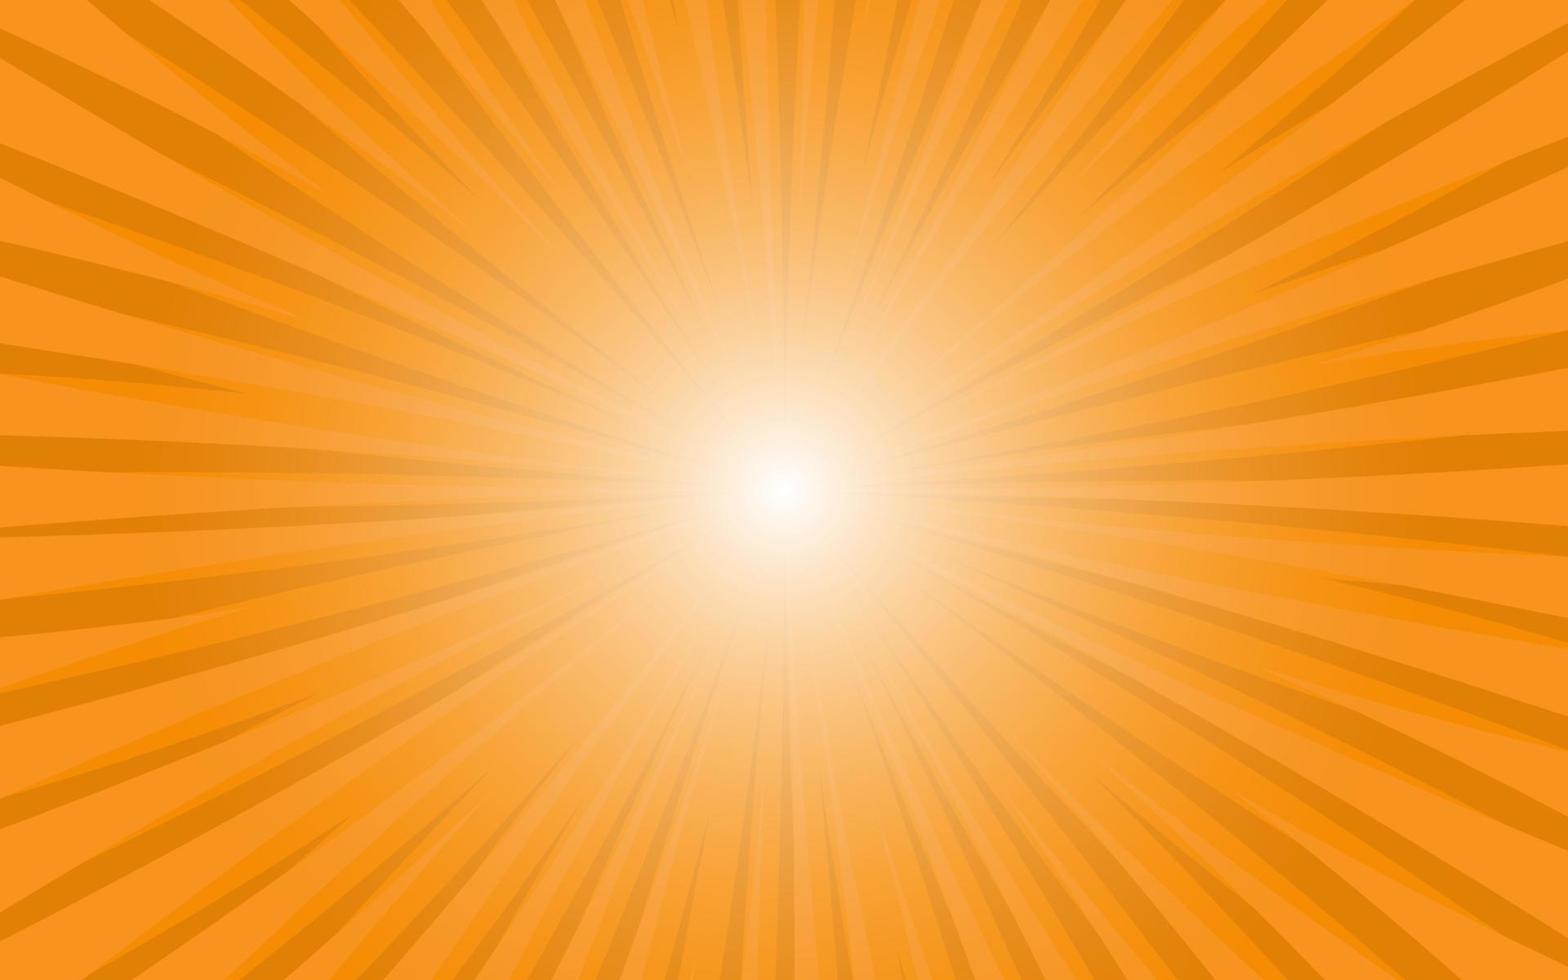 rayons de soleil style vintage rétro sur fond orange, fond de motif comique sunburst. des rayons. illustration vectorielle de bannière d'été vecteur